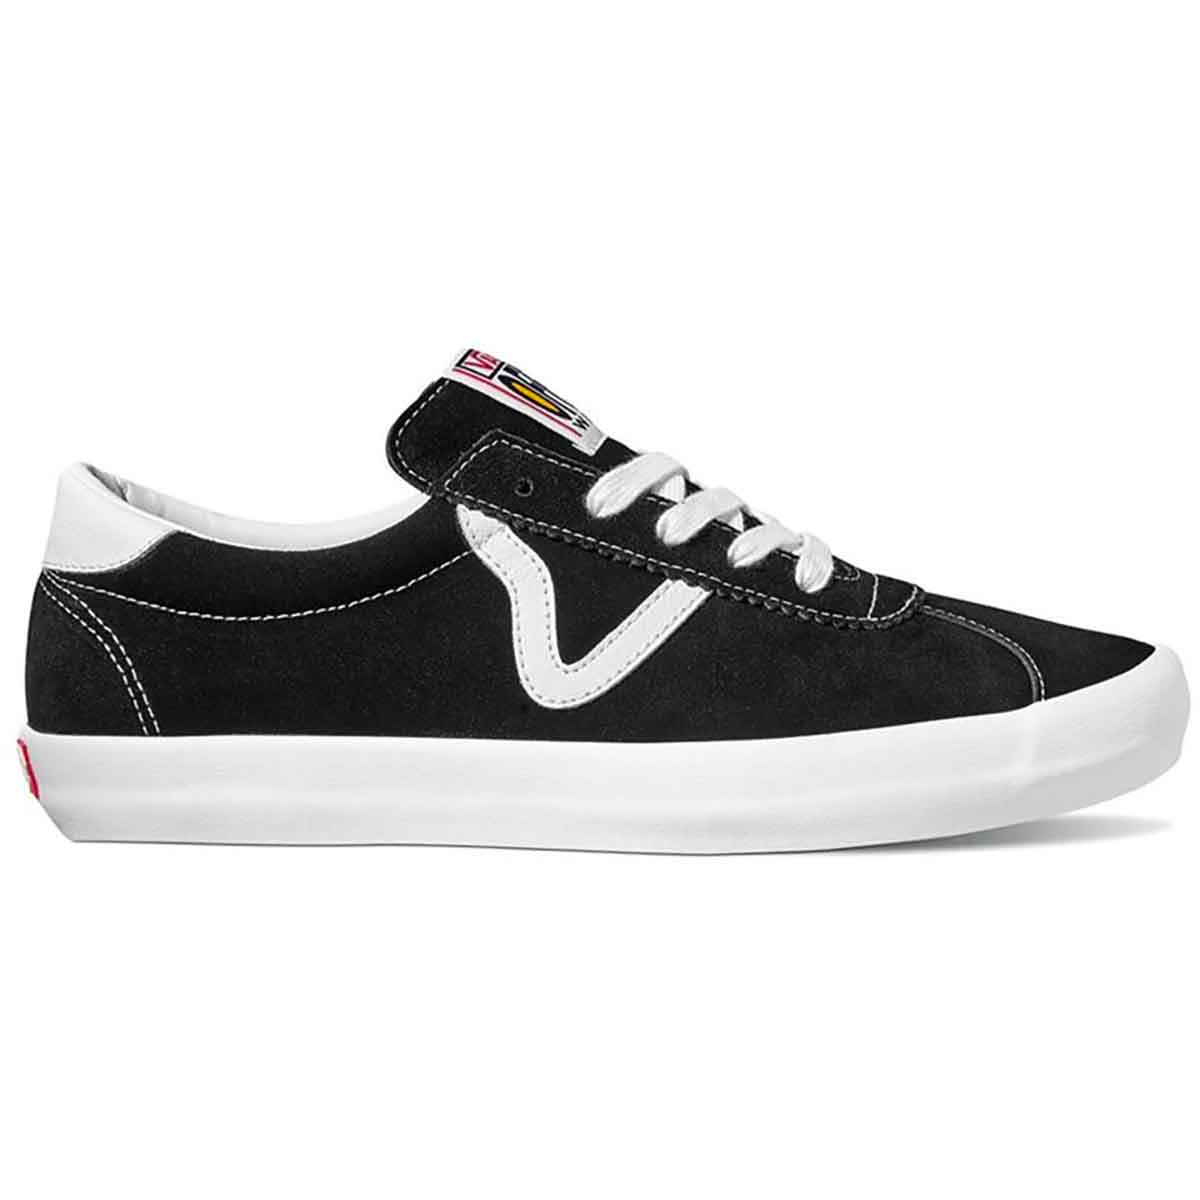 Black/White Skate Sport Vans Skateboard Shoe